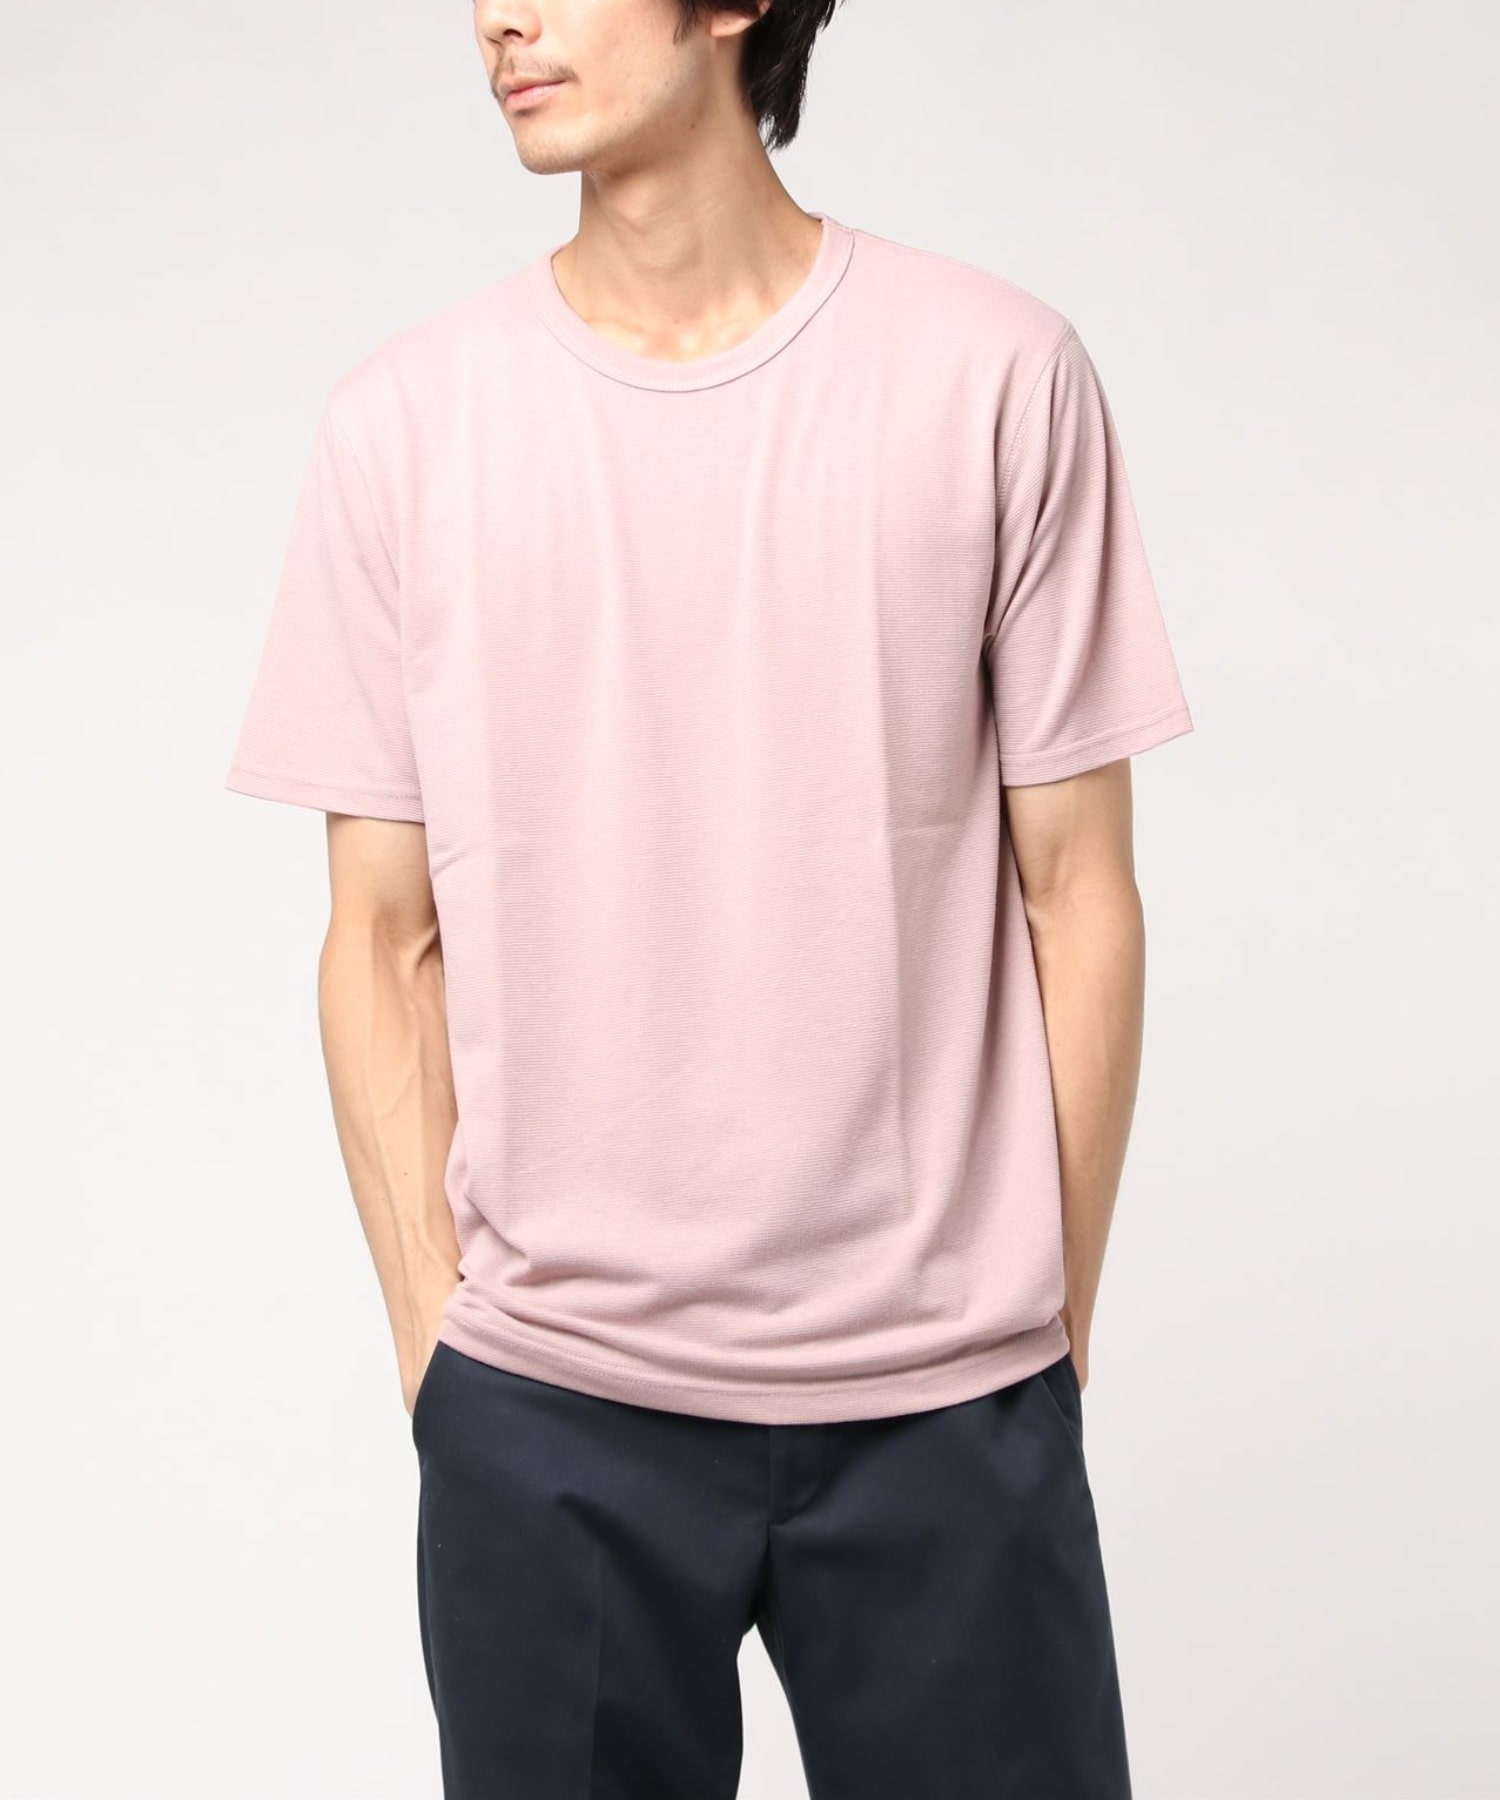 サーマルニットtシャツ メンズファッション通販 Men S Bigi Online Store メンズビギ オンラインストア